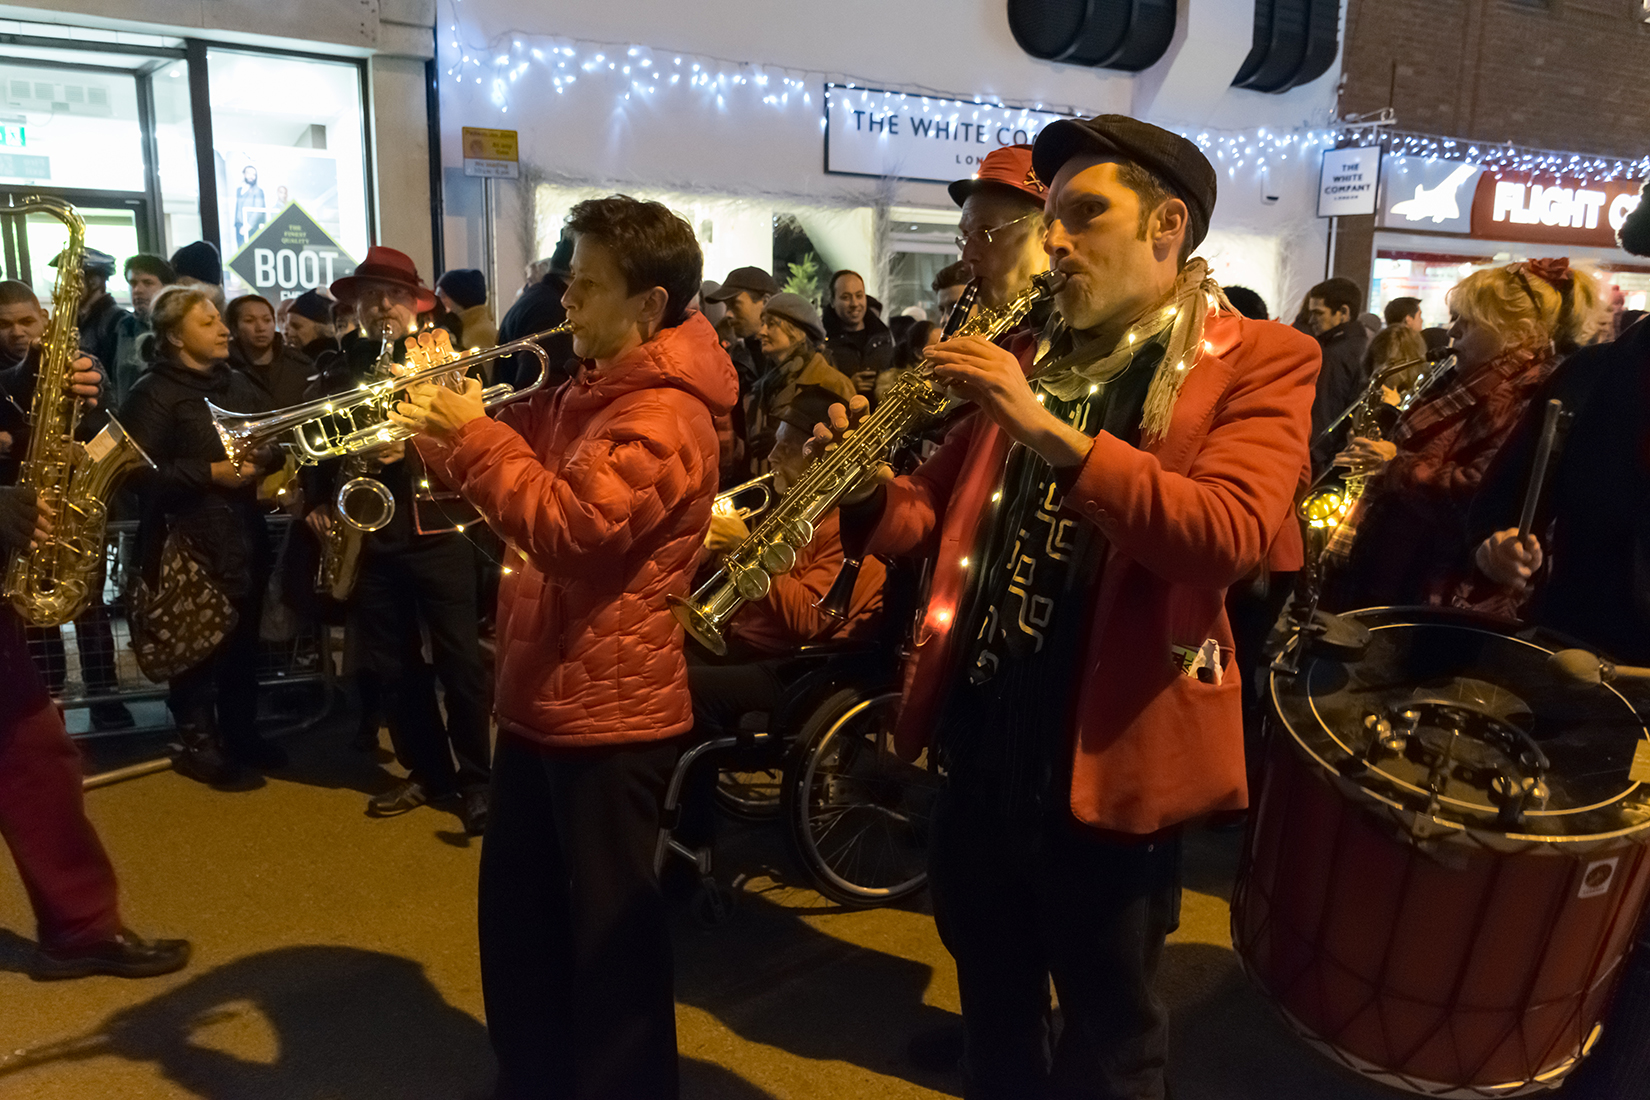 Horns of Plenty, Oxford's community street band